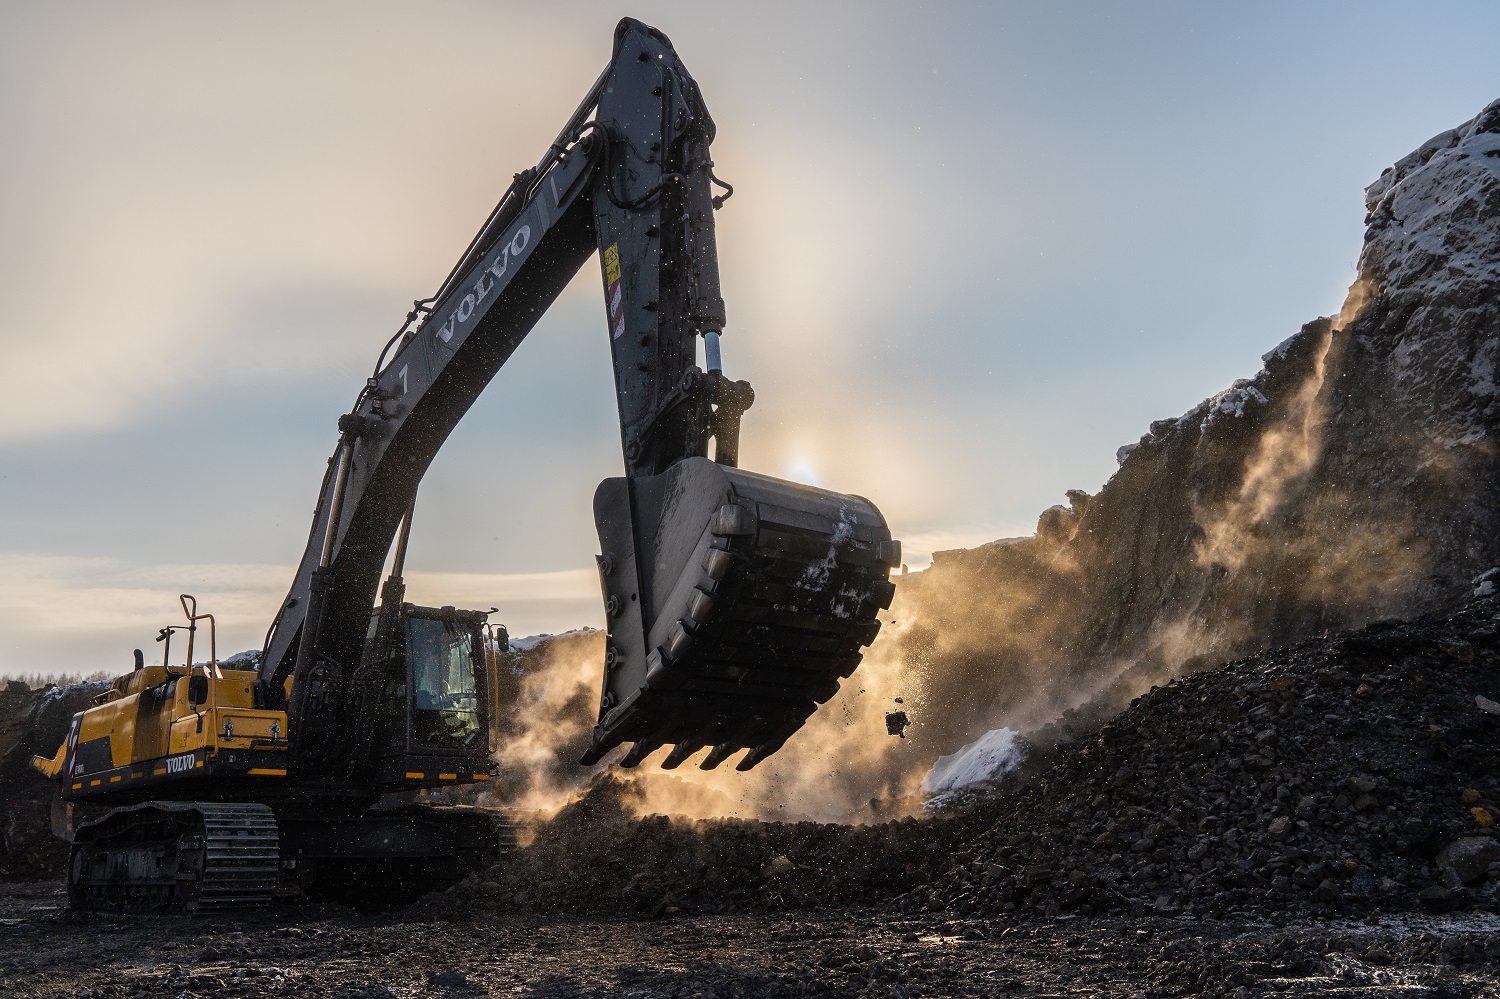 Предприятия АО Стройсервис на 11% увеличили добычу угля в I квартале 2022 года. Стройсервис